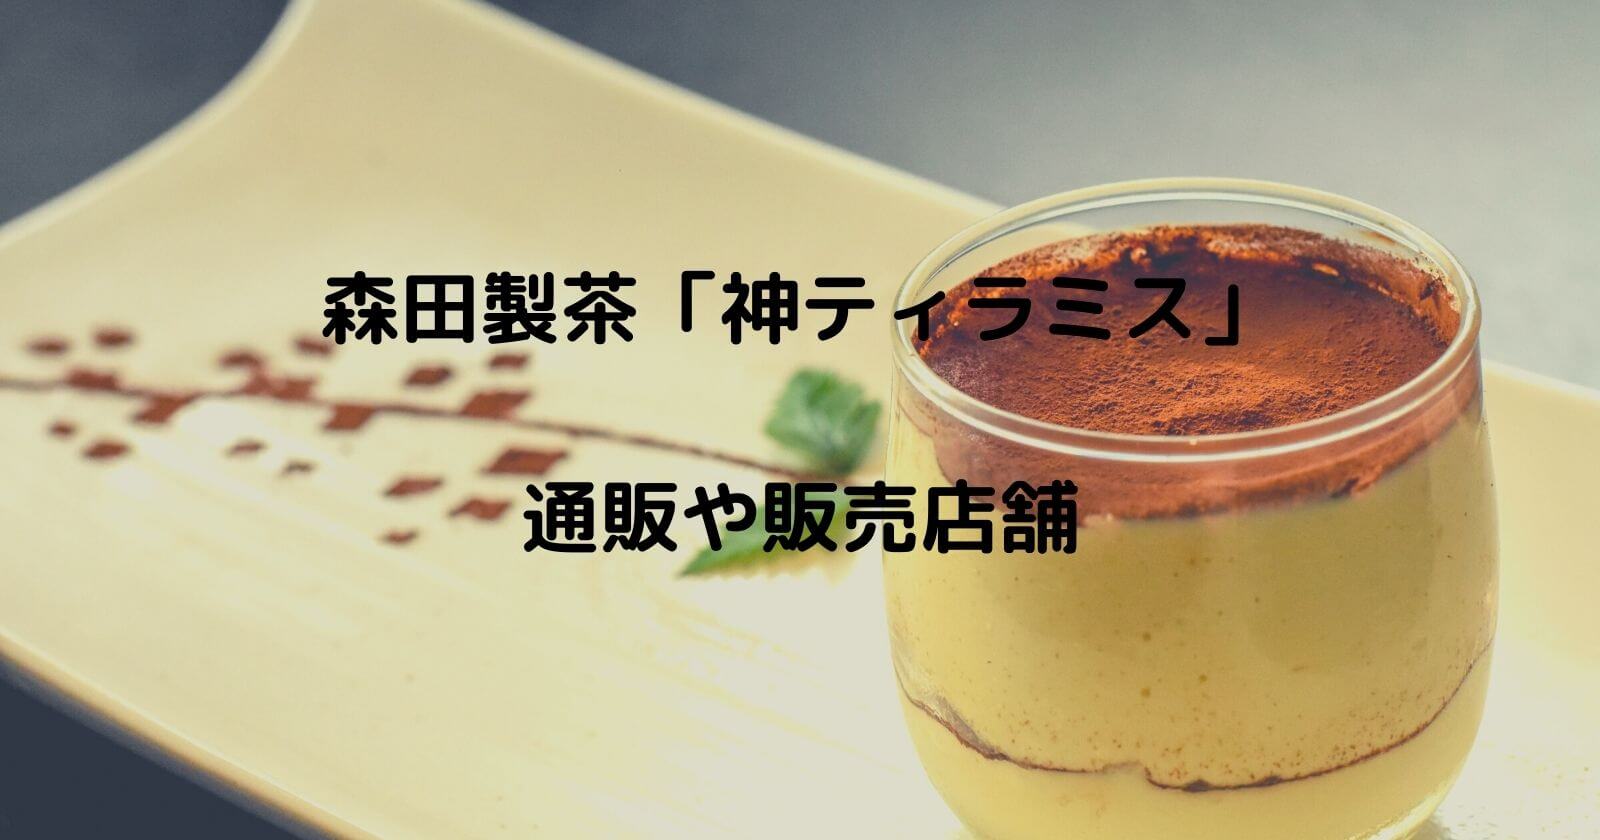 森田製茶「神ティラミス」お取り寄せ通販や販売店舗